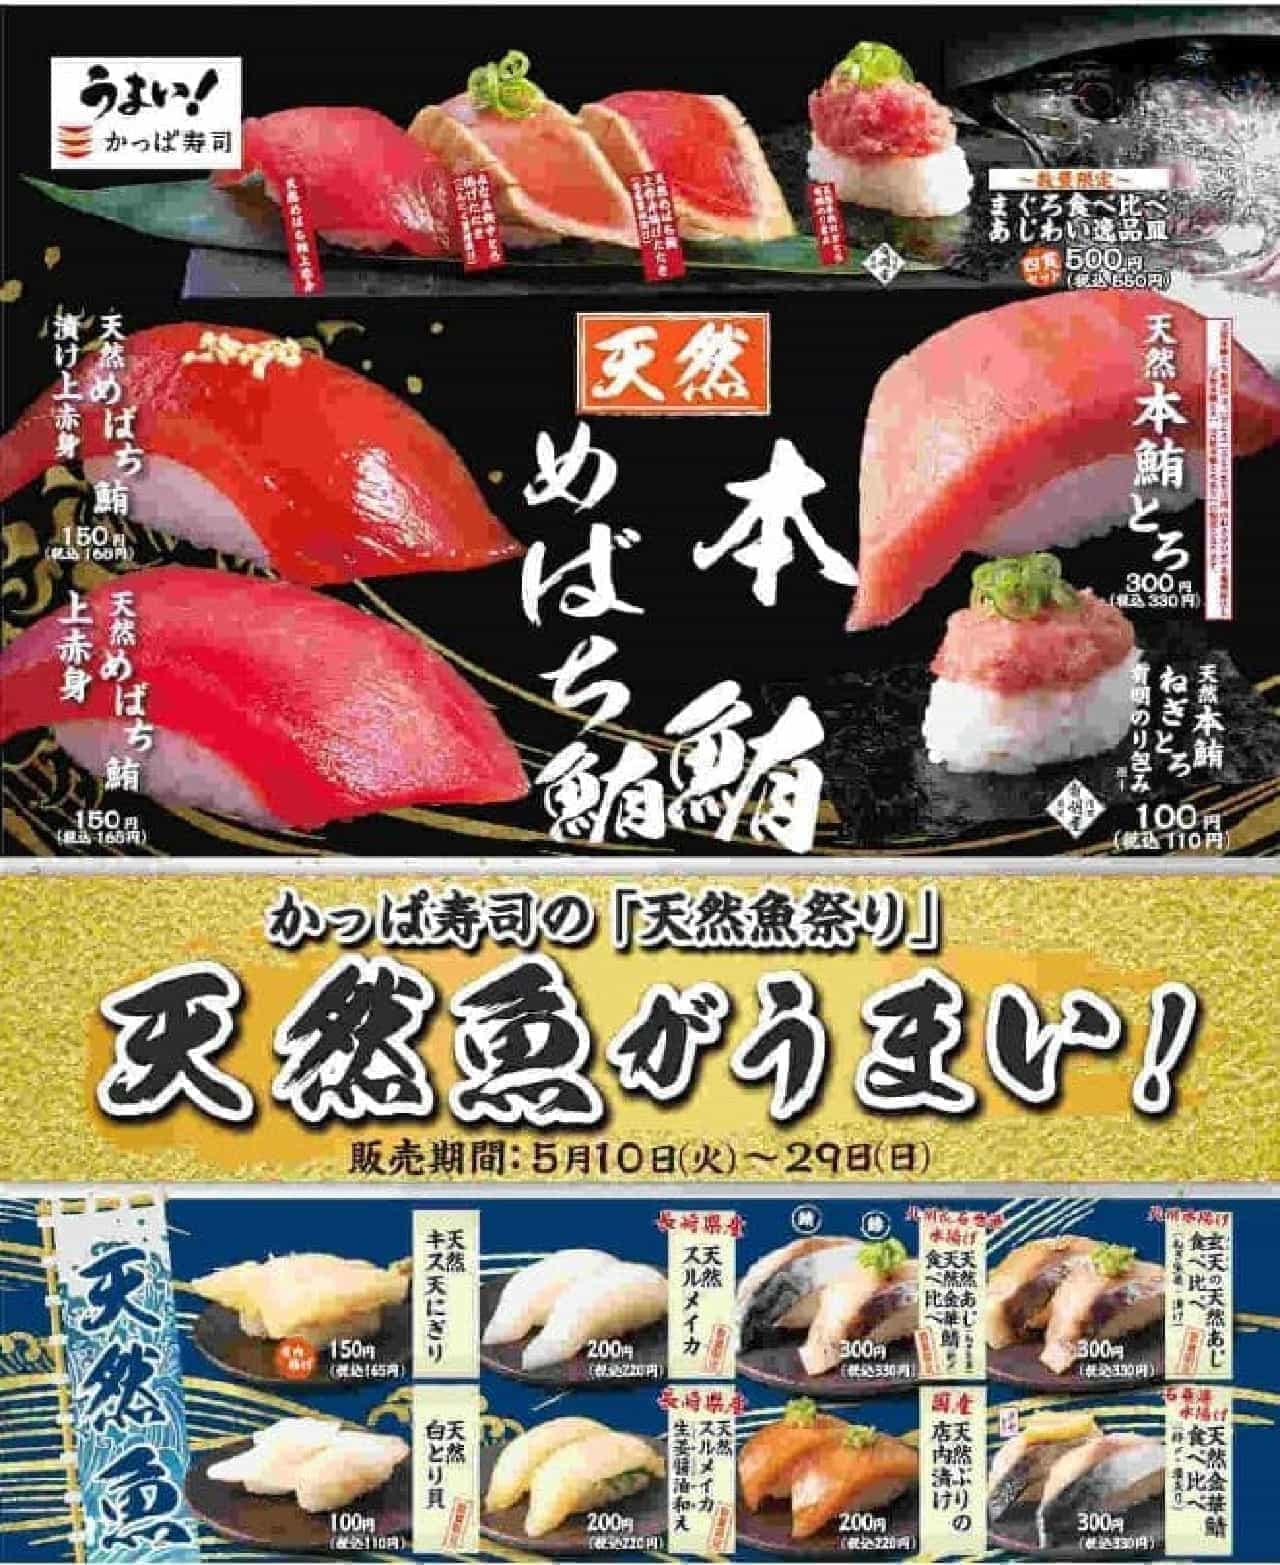 Kappa Sushi "Natural Fish Festival